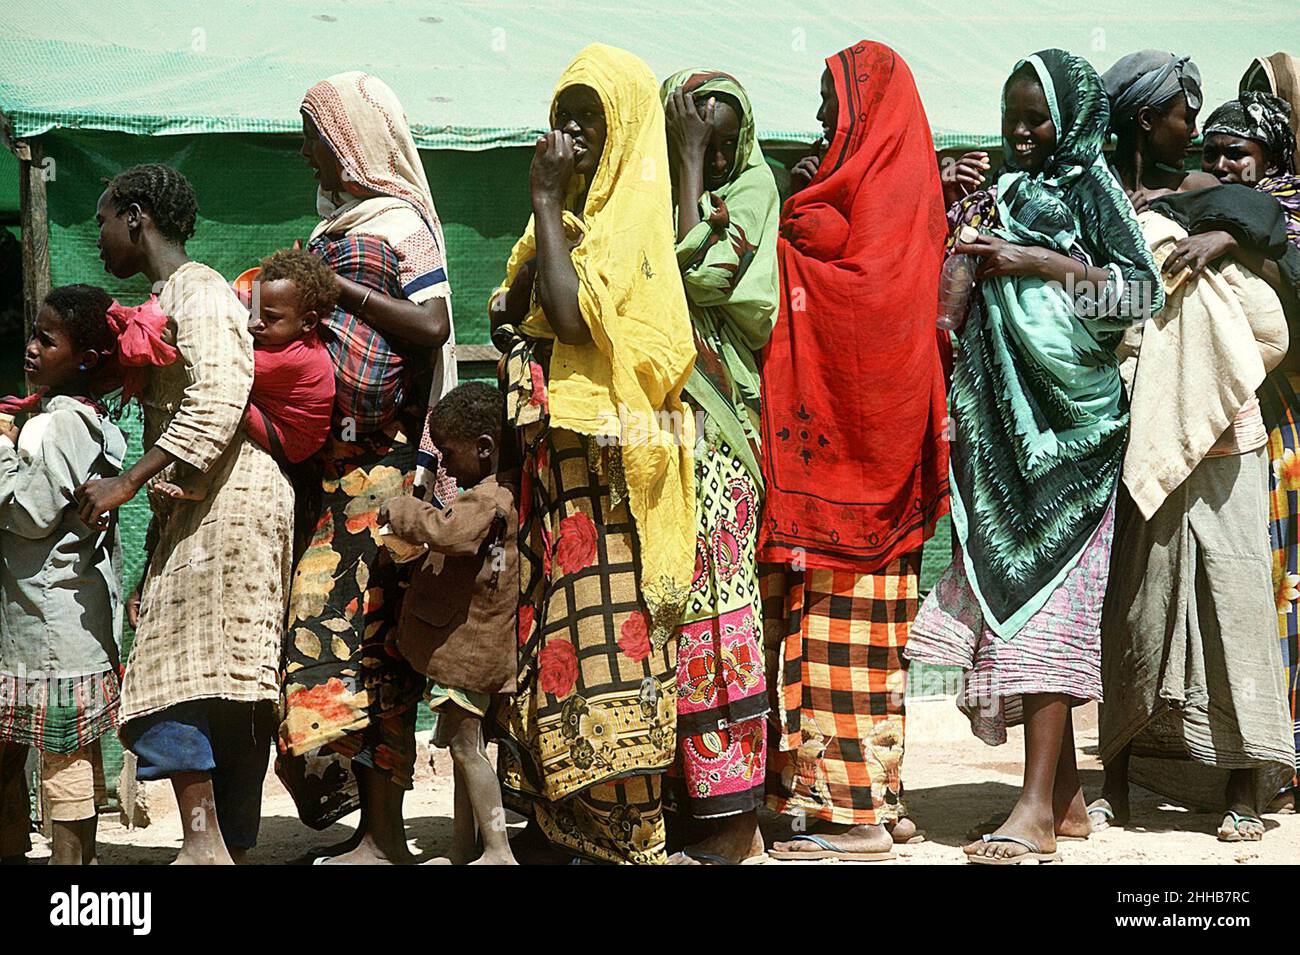 Donne e bambini somali si allineano in una stazione di soccorso durante l'operazione multinazionale di soccorso Restore Hope DN-ST-93-02601. Foto Stock